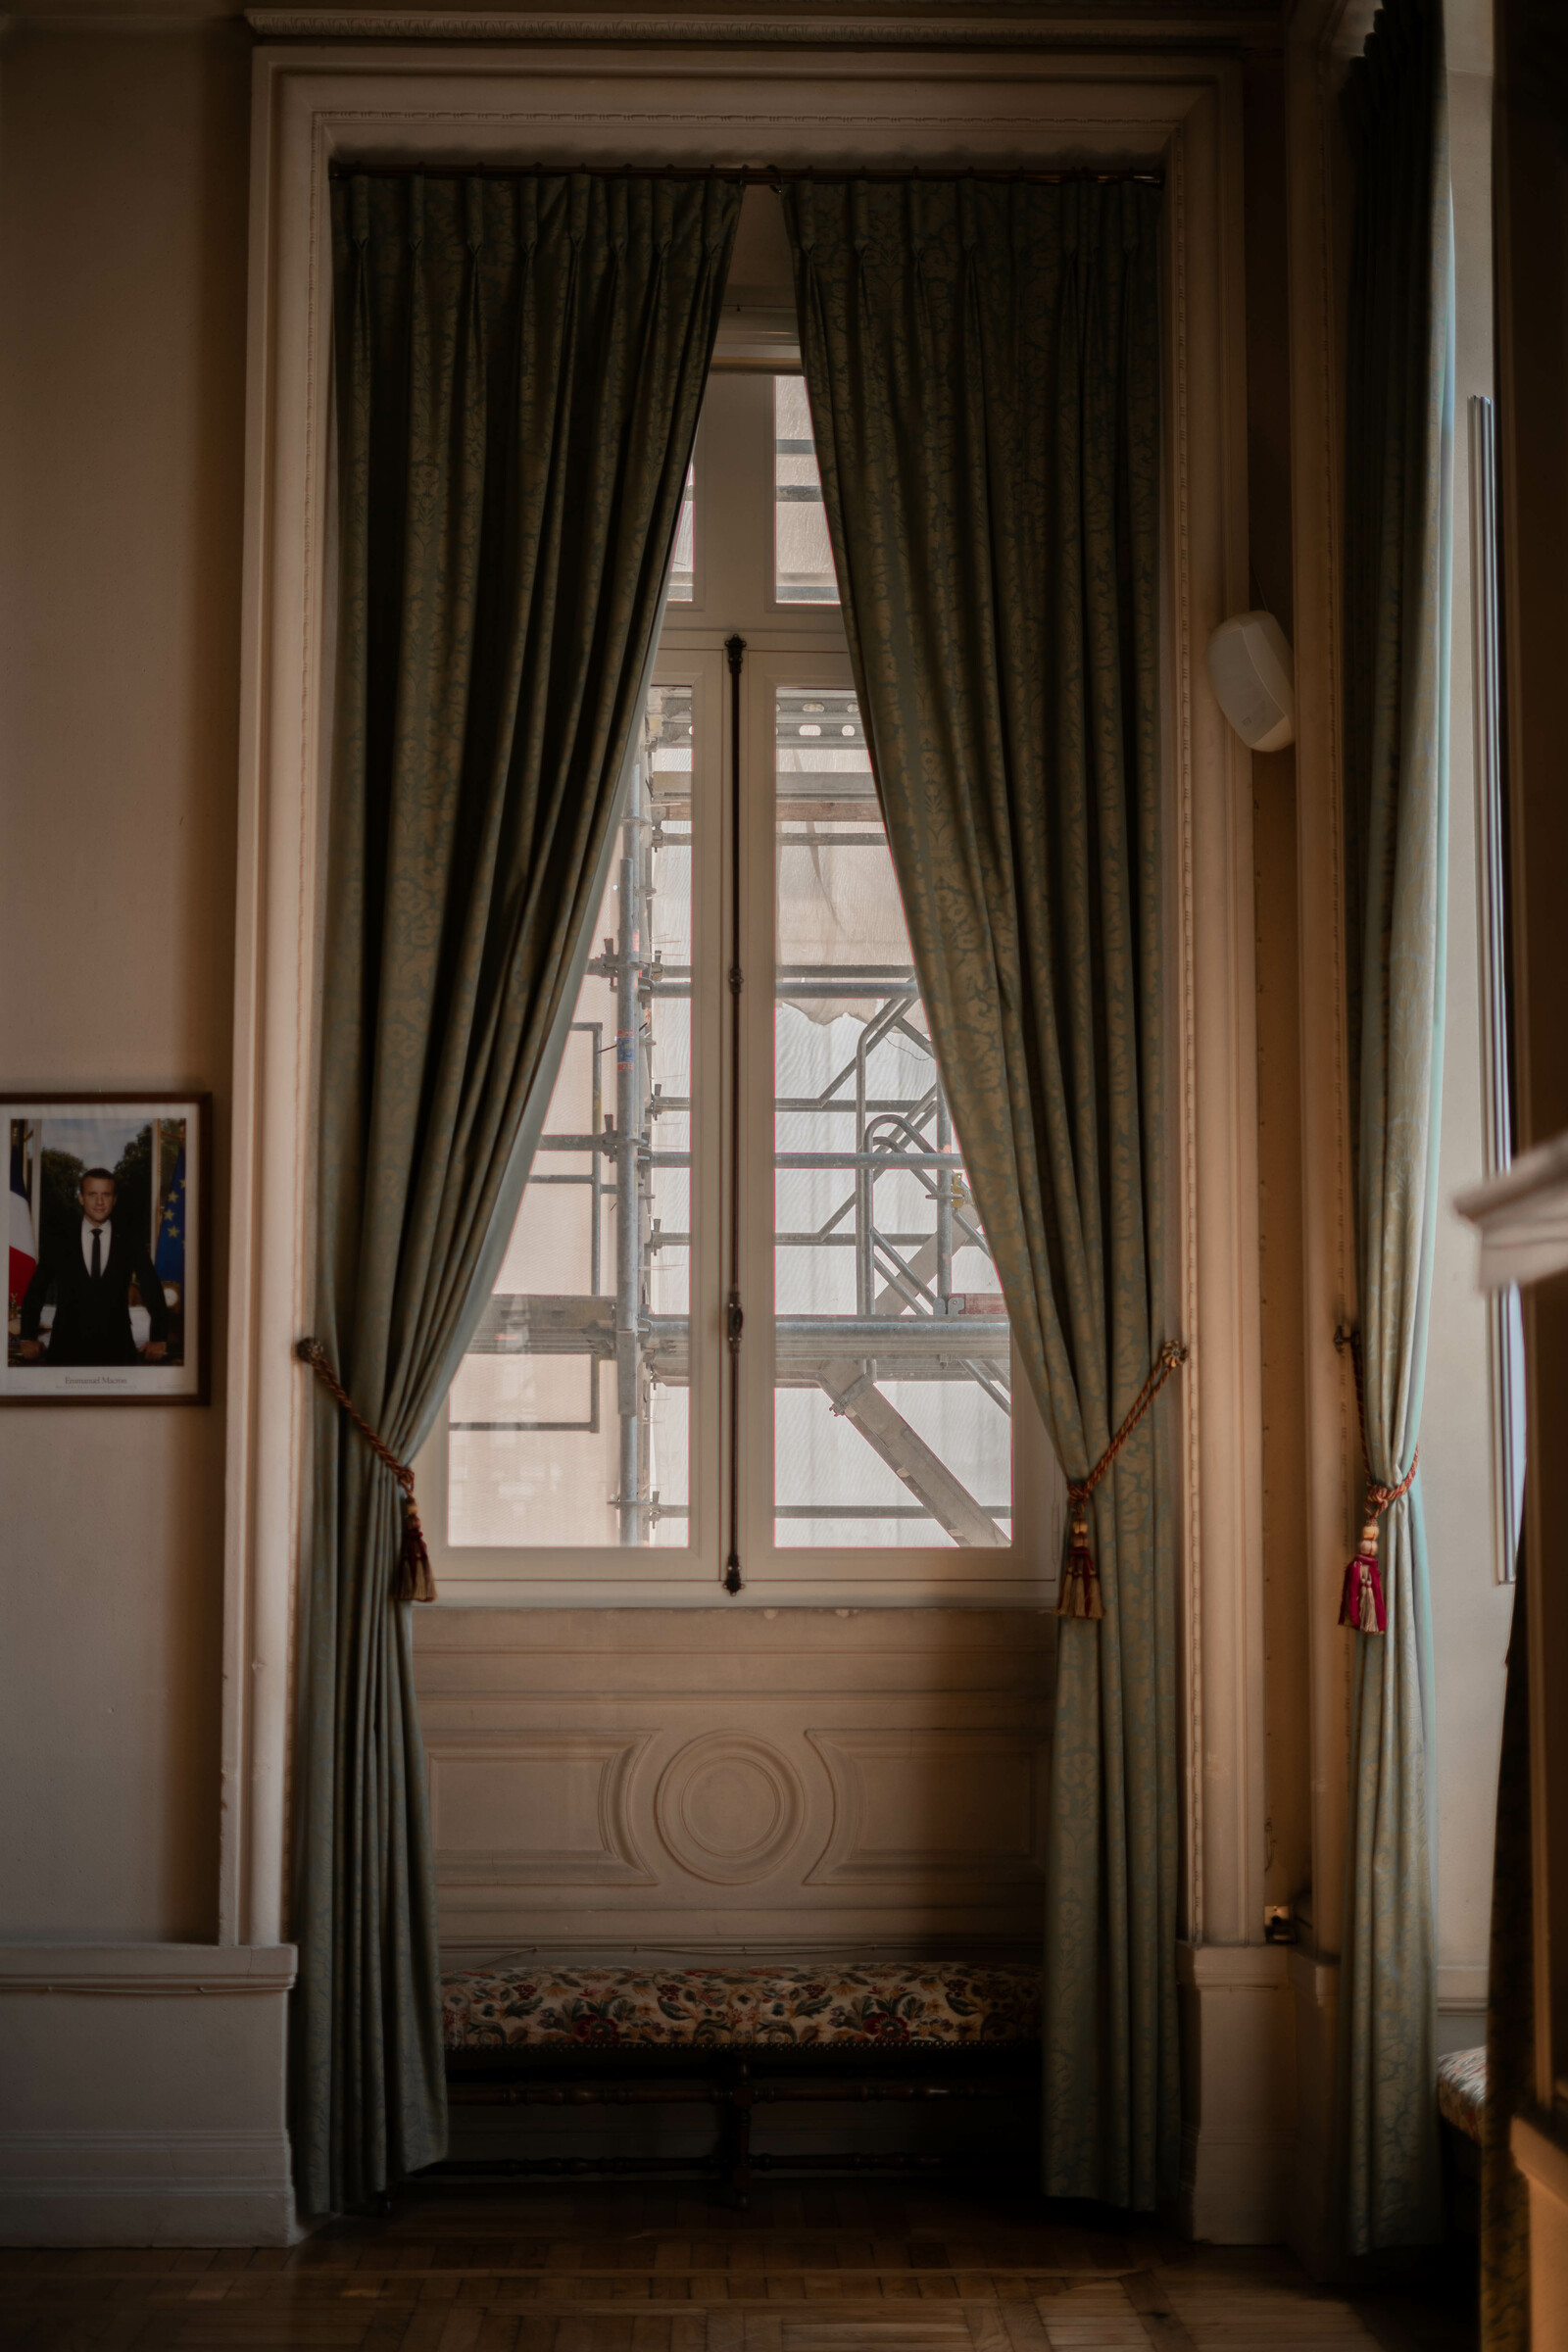 A window in the Hôtel de ville de Reims.